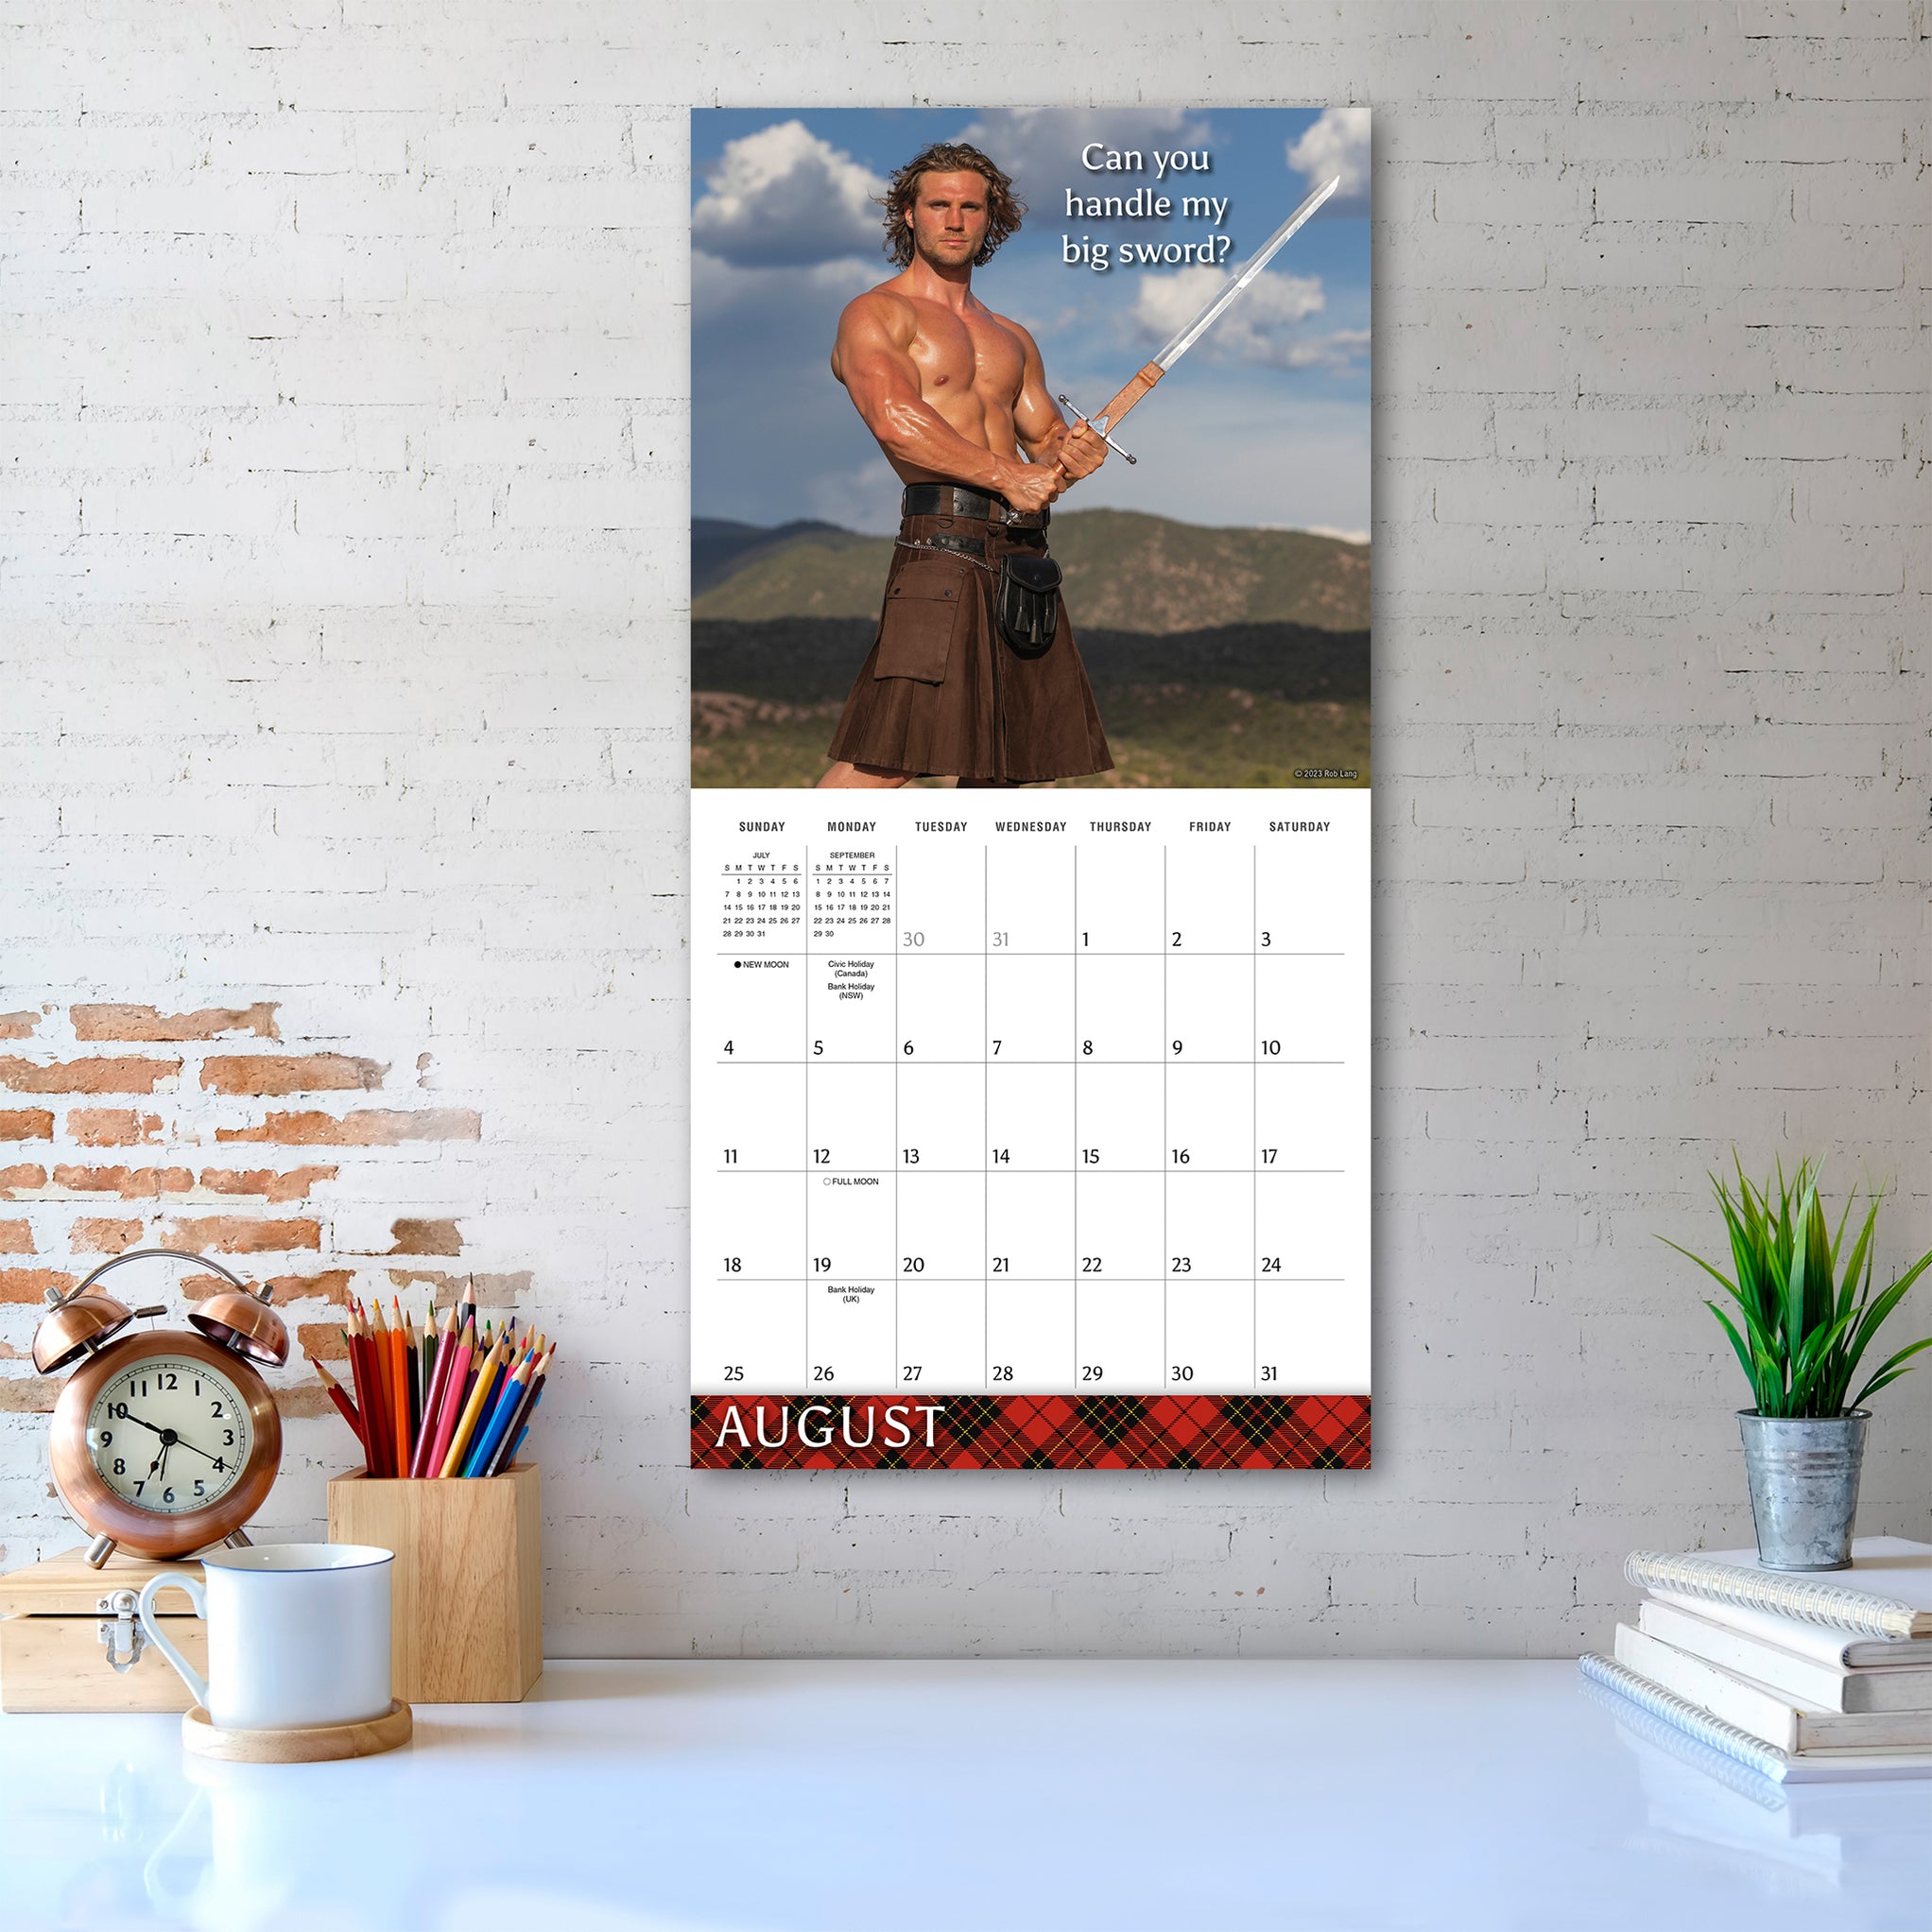 2024 Kilty Pleasures Wall Calendar — Calendar Club